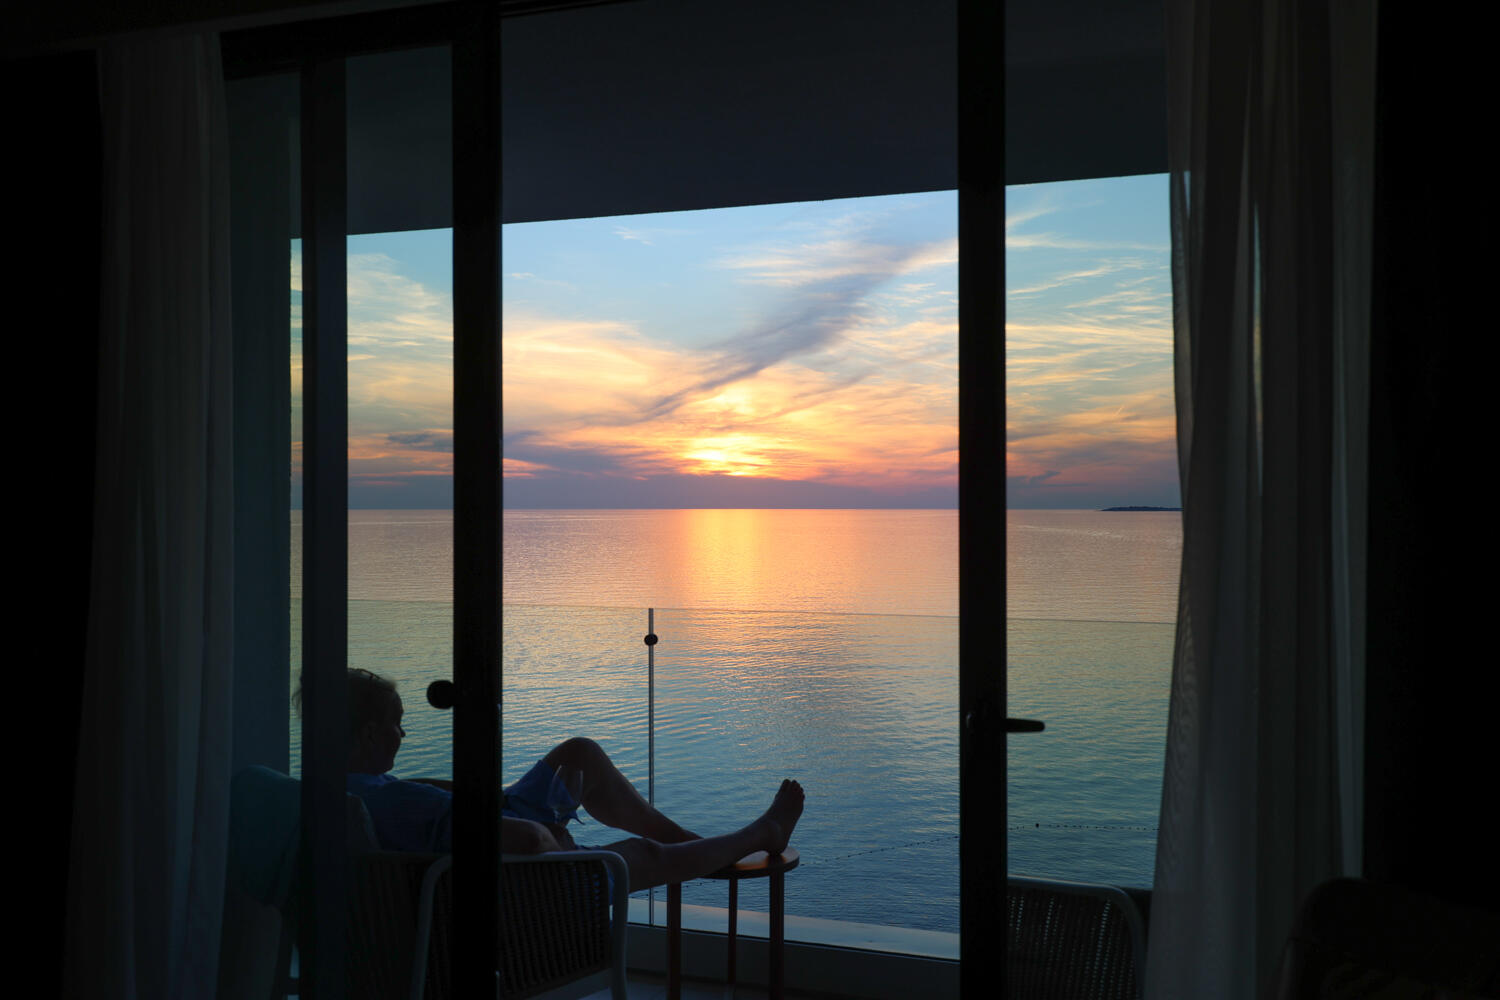 Frau, die in einem dunklen Zimmer mit Balkon sitzt und auf den Sonnenuntergang über dem Meer blickt.